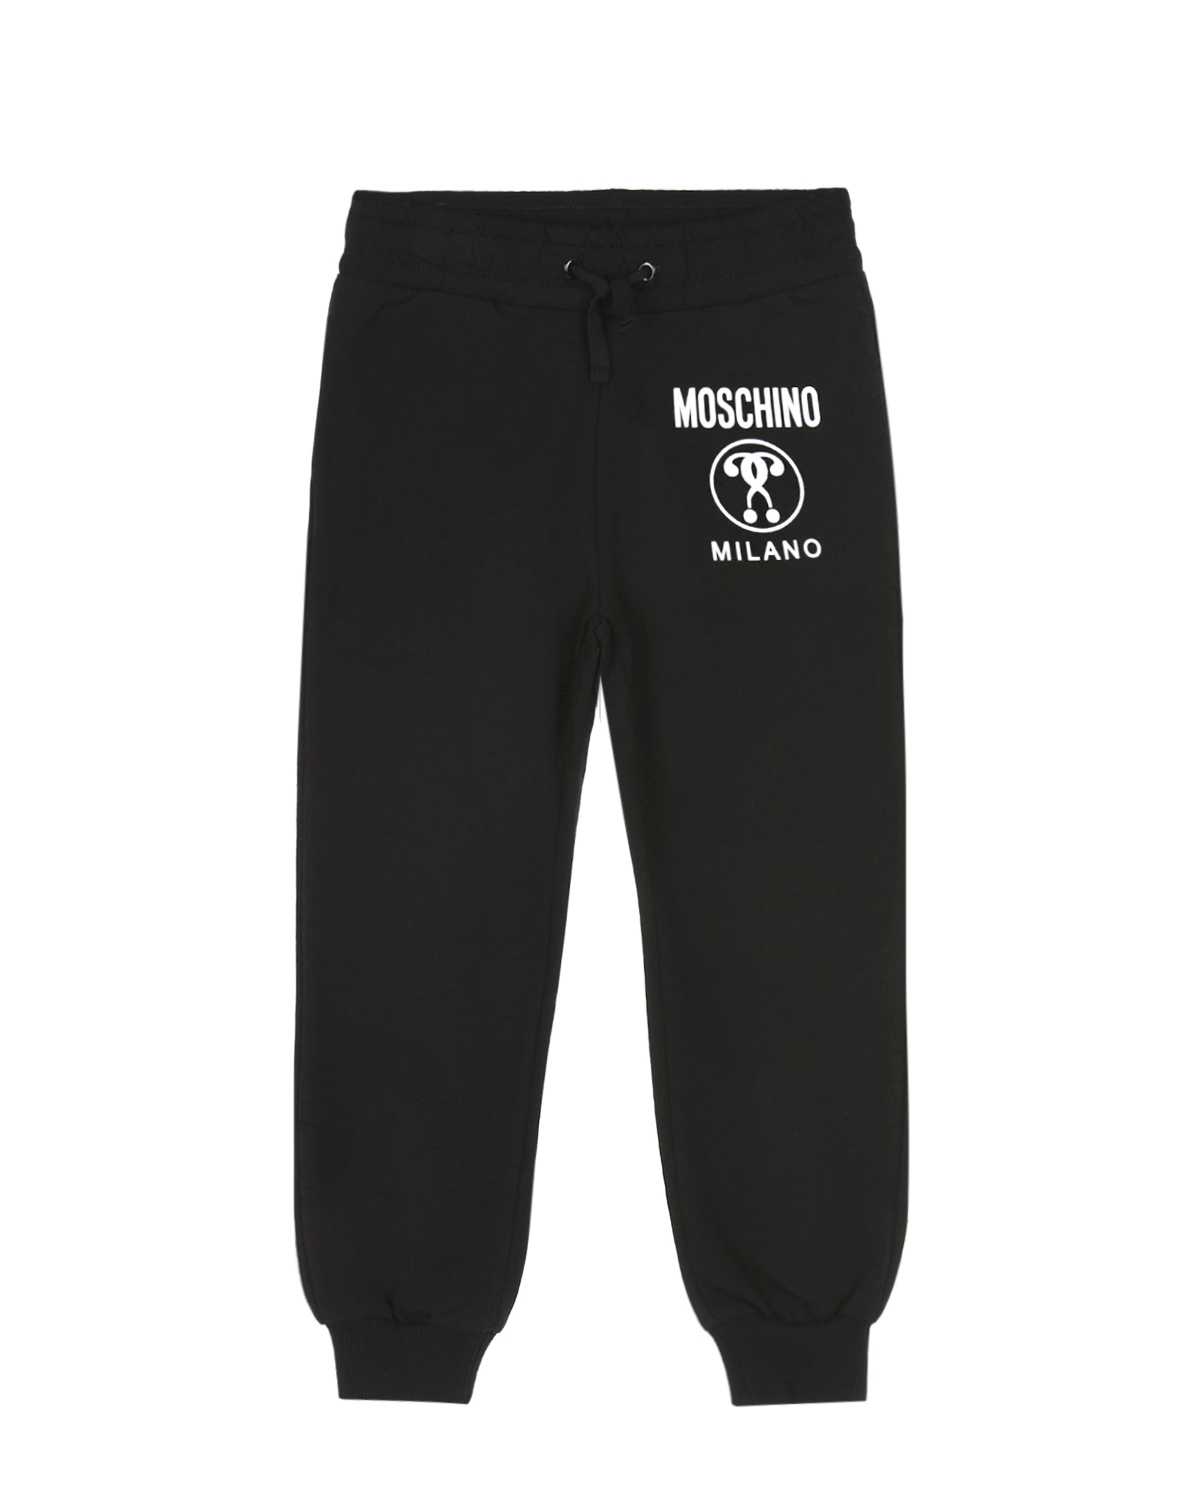 Спортивные брюки с контрастным логотипом Moschino детские, размер 140, цвет черный - фото 1